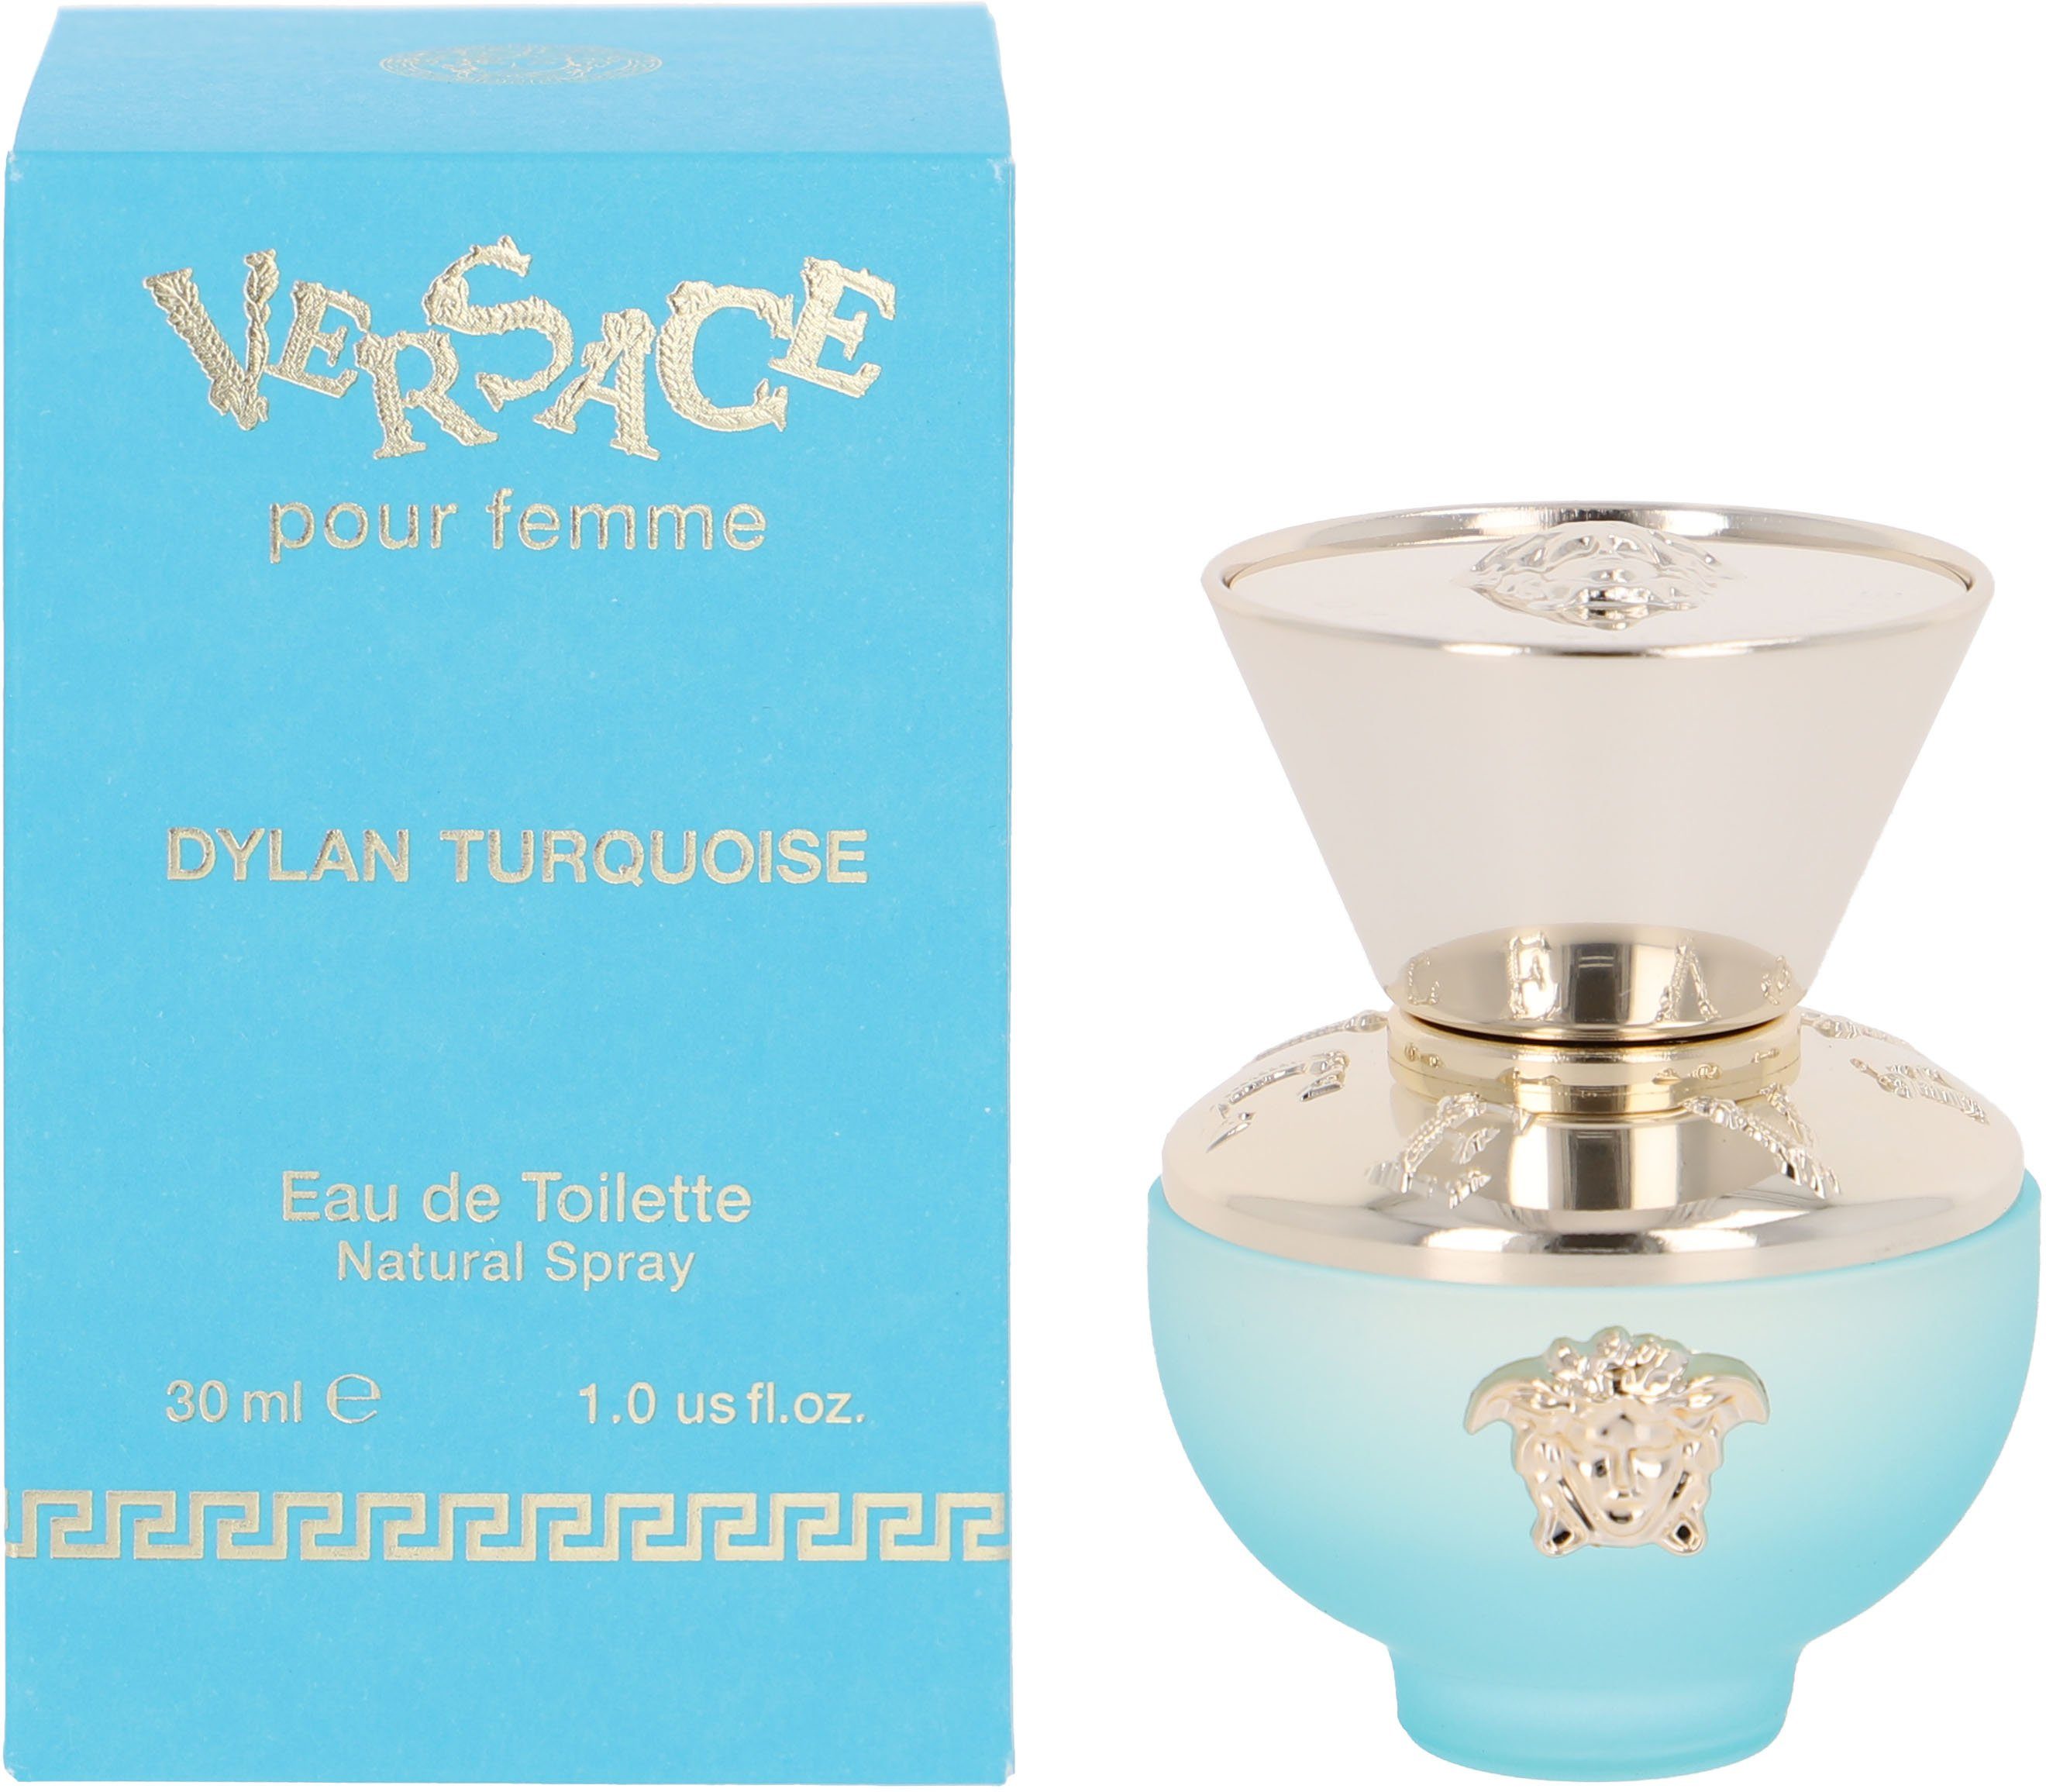 Versace Eau Turquoise de Versace Femme Dylan Toilette